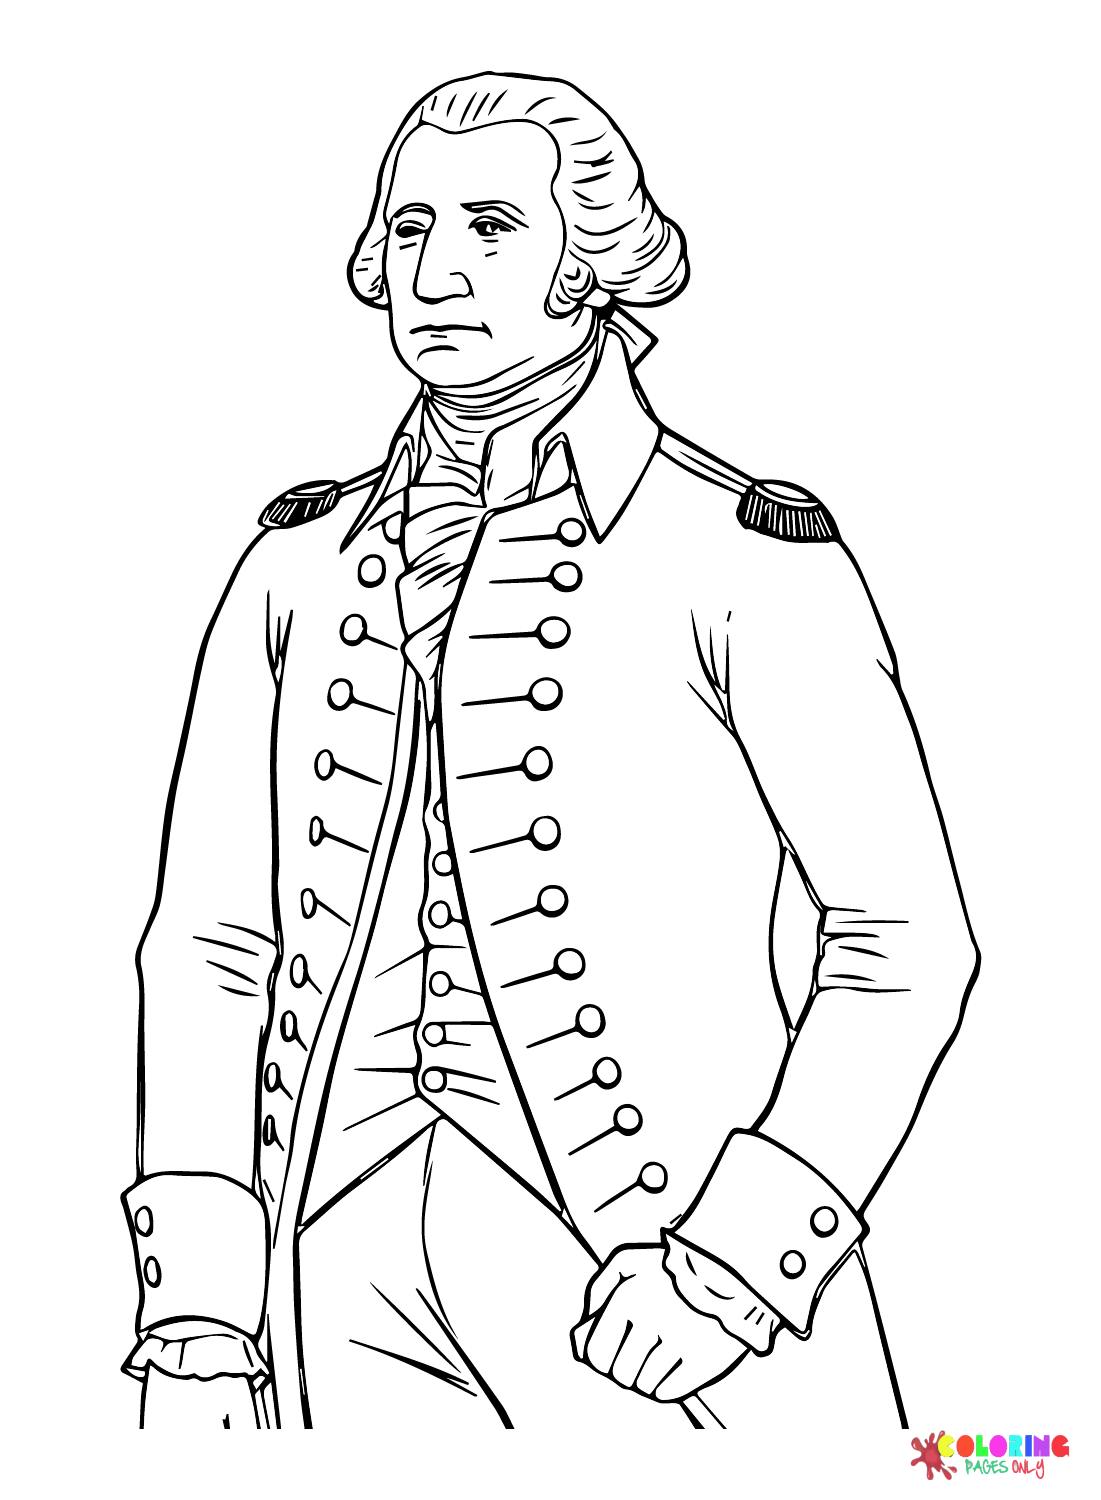 Ausmalbilder von George Washington